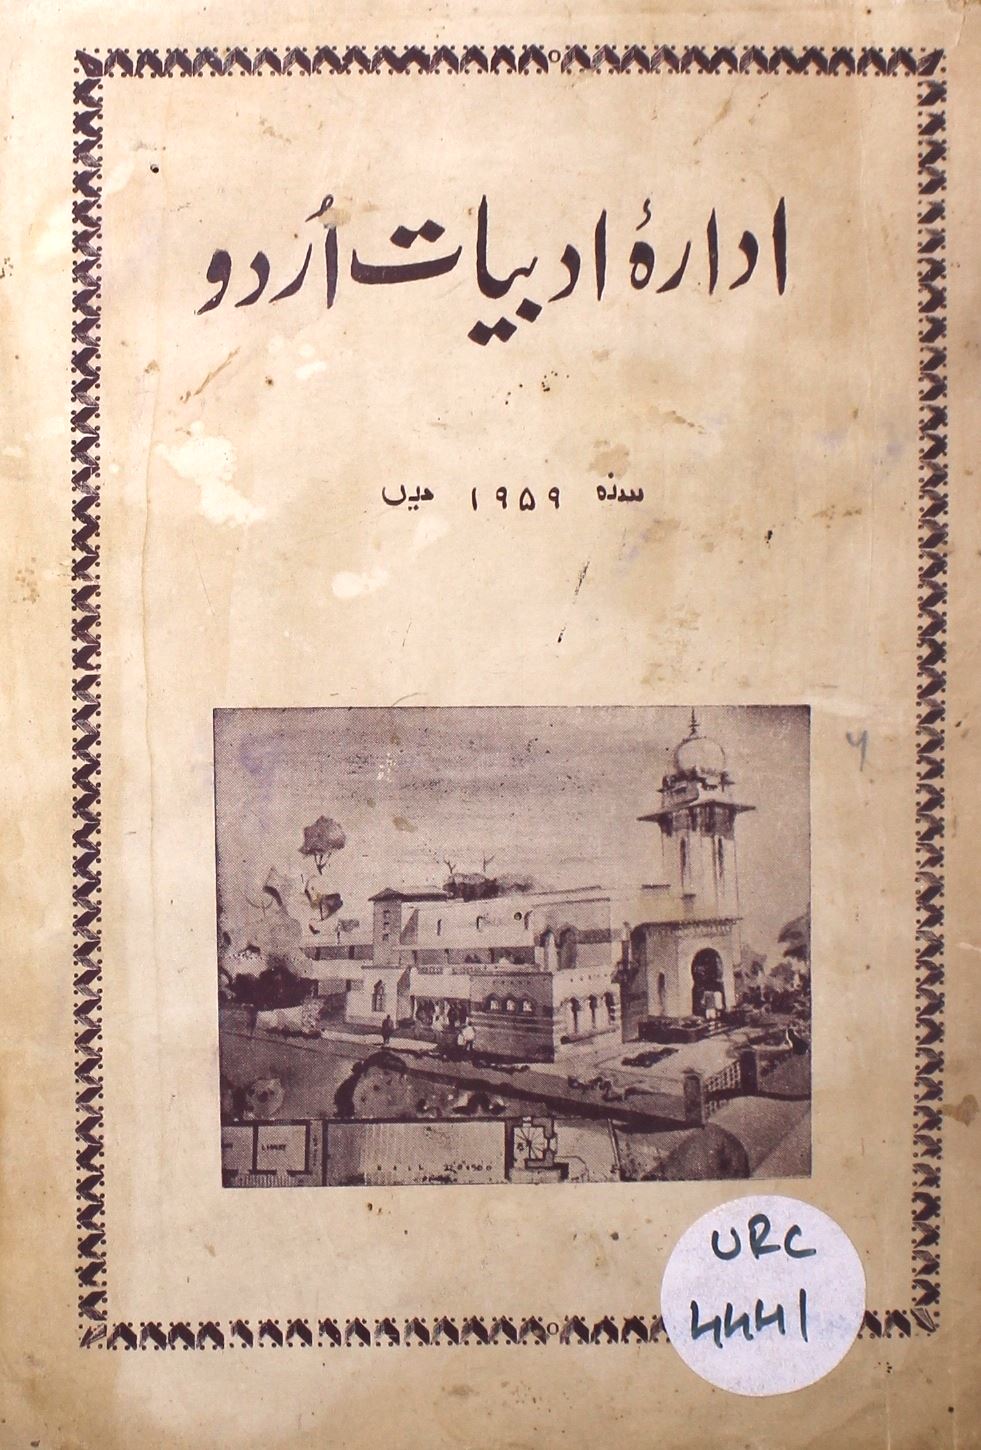 ادارۂ ادبیات اردو 1959 میں